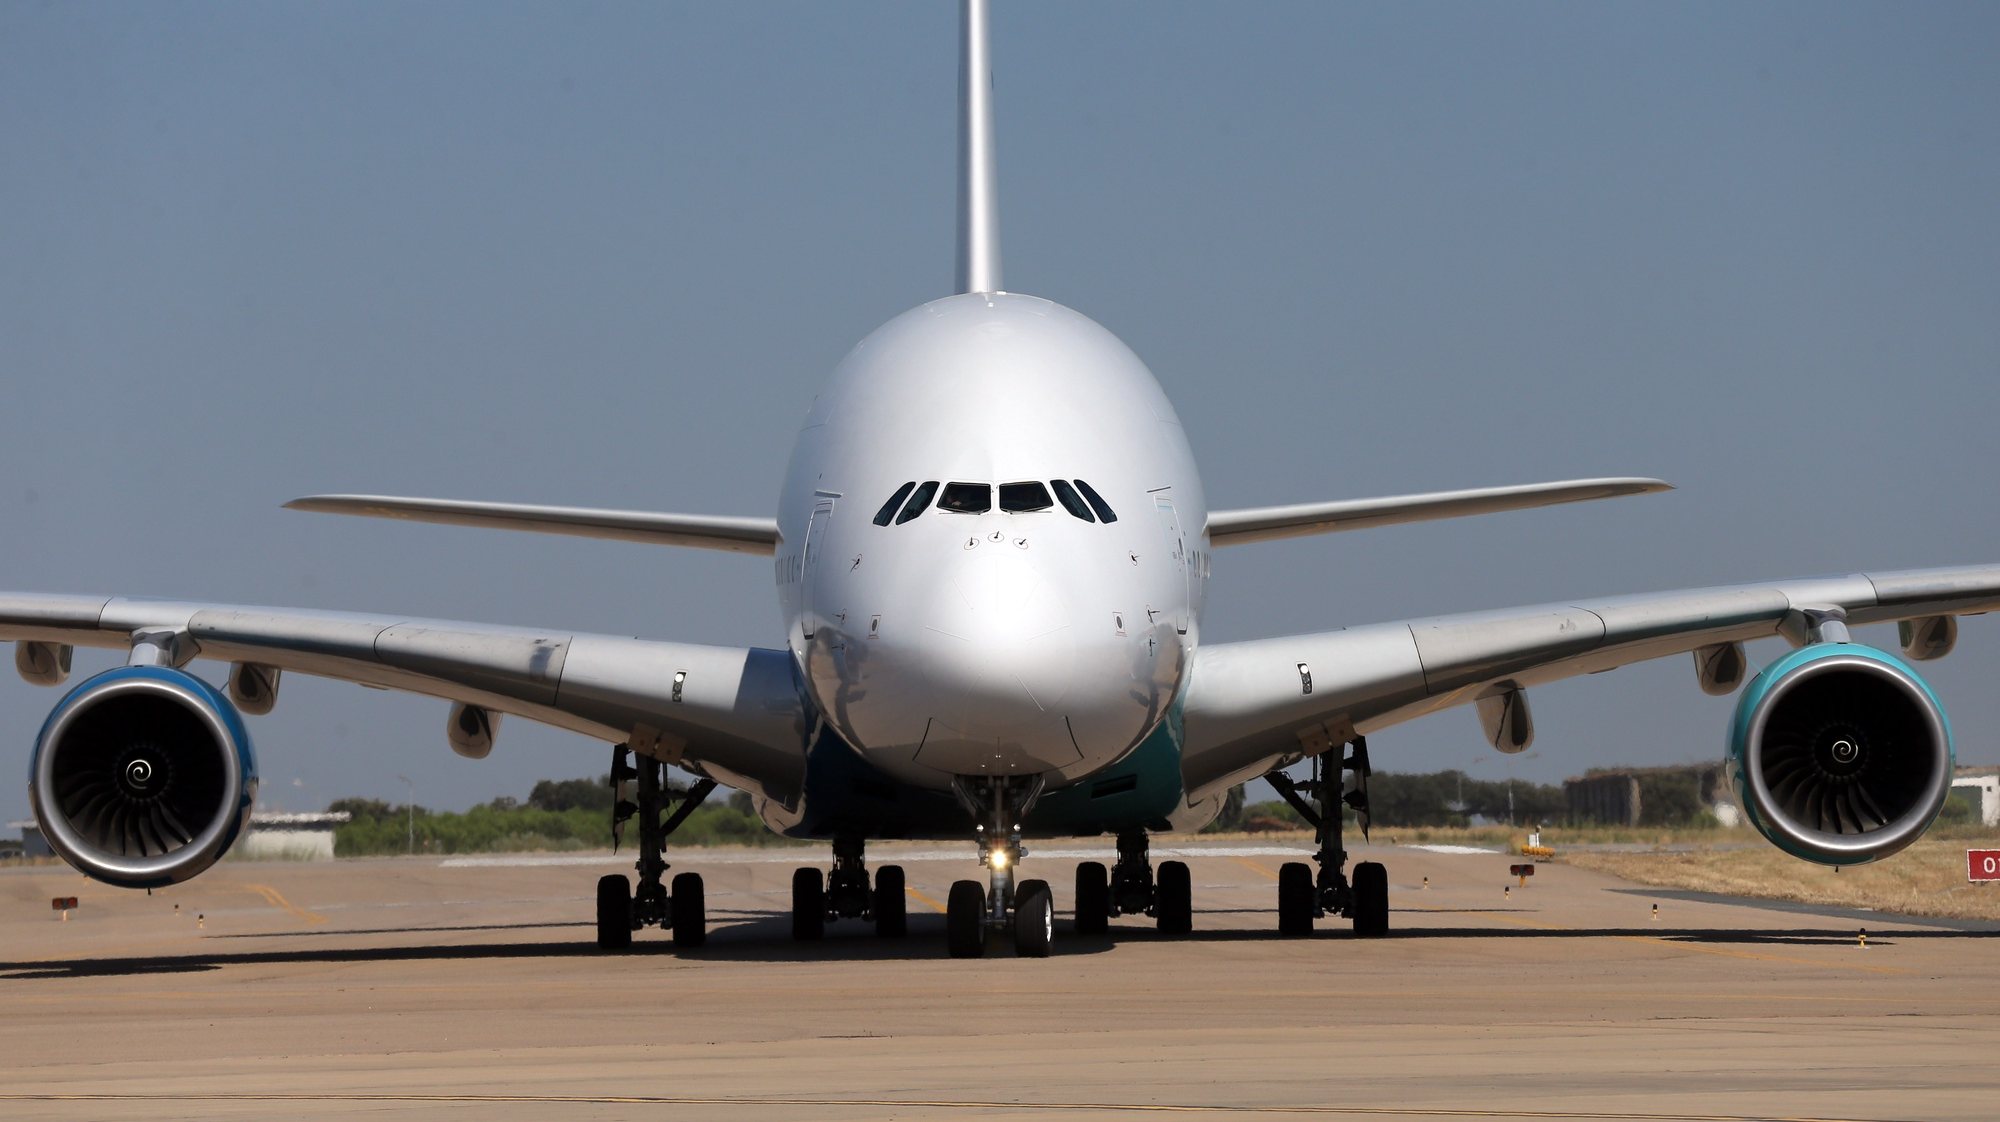 Um airbus A380, da companhia aérea Hi Fly, aterra na pista do Aeroporto de Beja. Esta cidade alentejana, para além das Lajes, é o aeroporto nacional que dispõe de uma pista com largura e comprimento suficientes para permitir que este Airbus A380 aterre e estacione. Beja, 23 de julho de 2018. NUNO VEIGA/LUSA